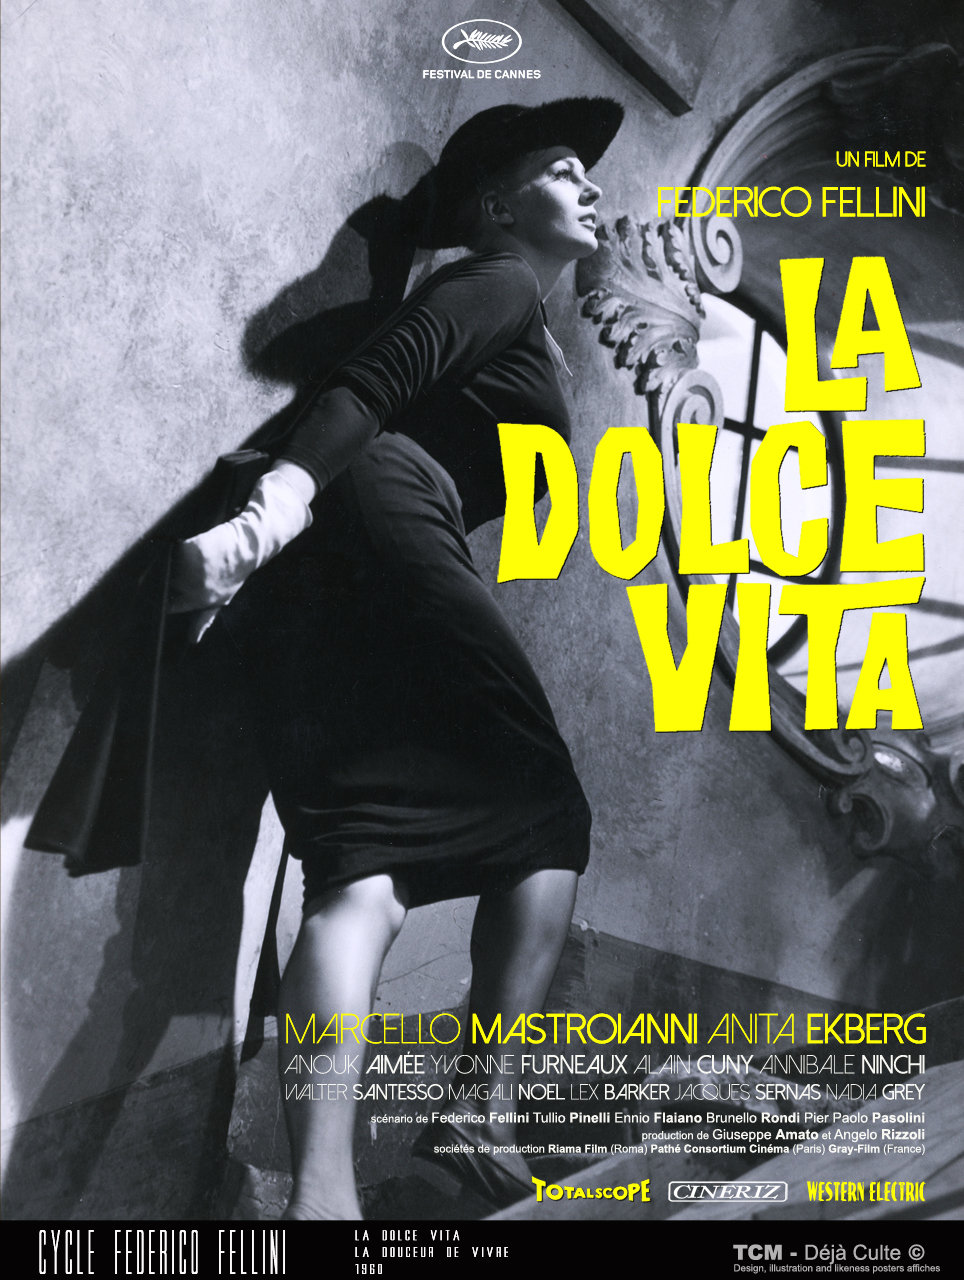 La Dolce Vita' – Federico Fellini (1960)